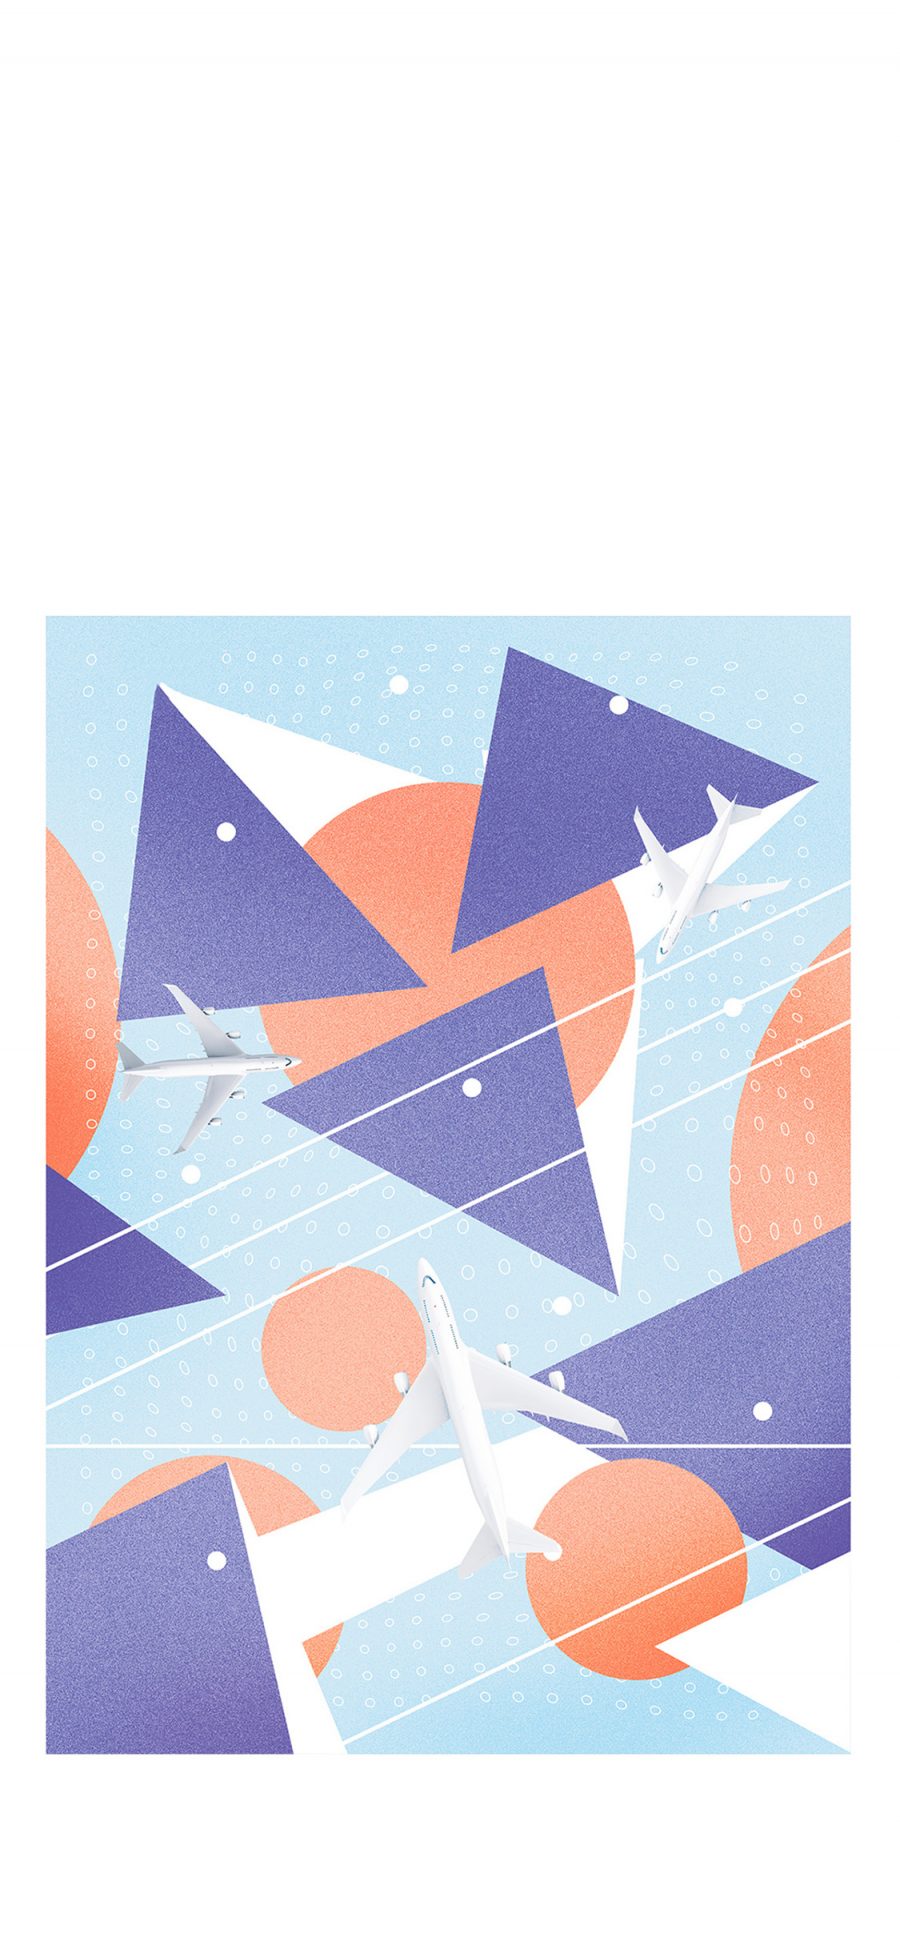 [2436×1125]封面 设计 飞机 几何 三角 苹果手机动漫壁纸图片